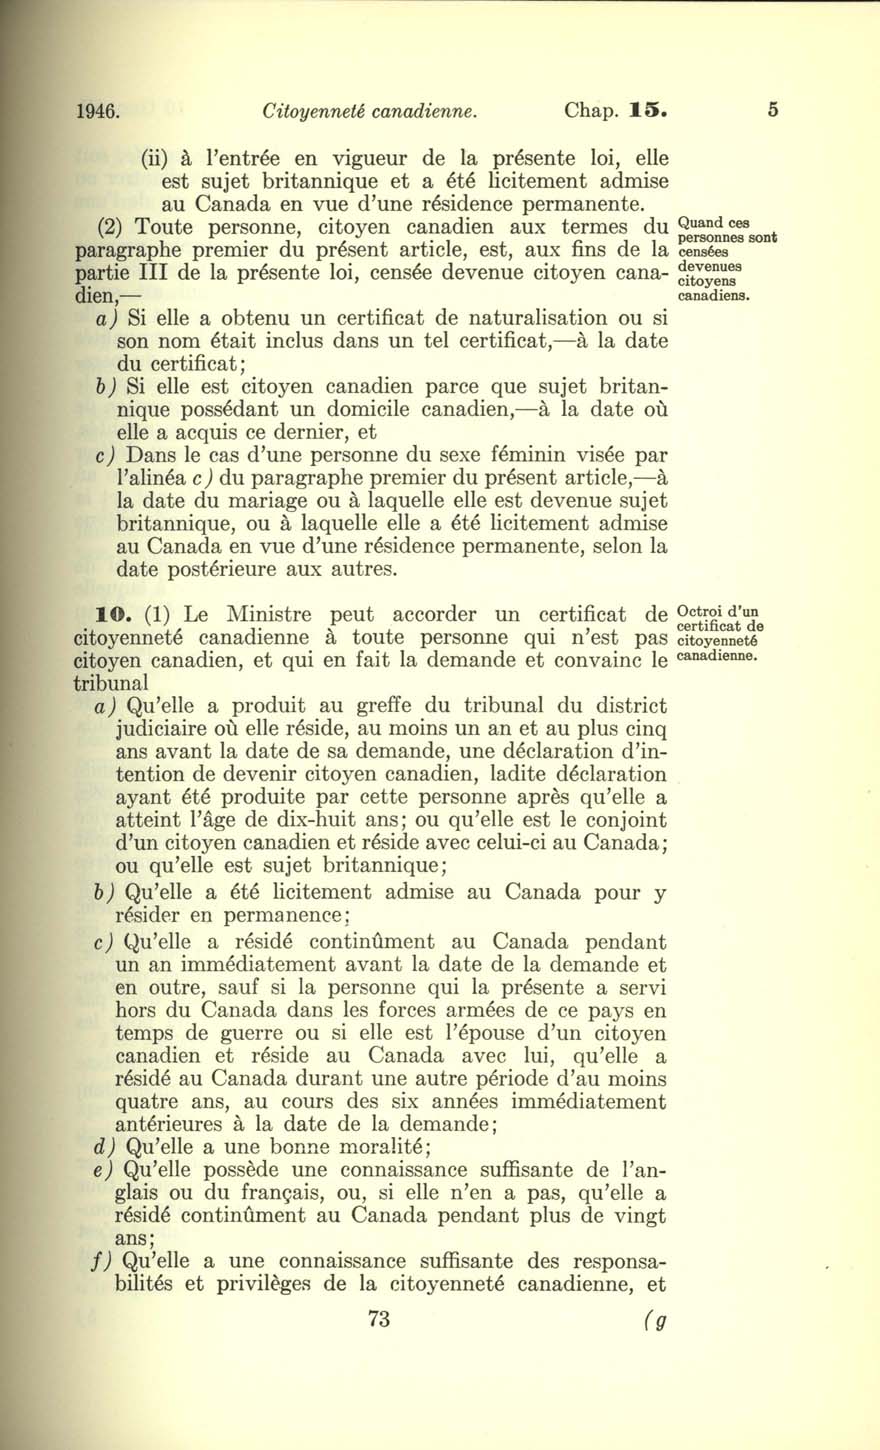 Chap. 15 Page 73 Loi sur la citoyenneté canadienne, 1947